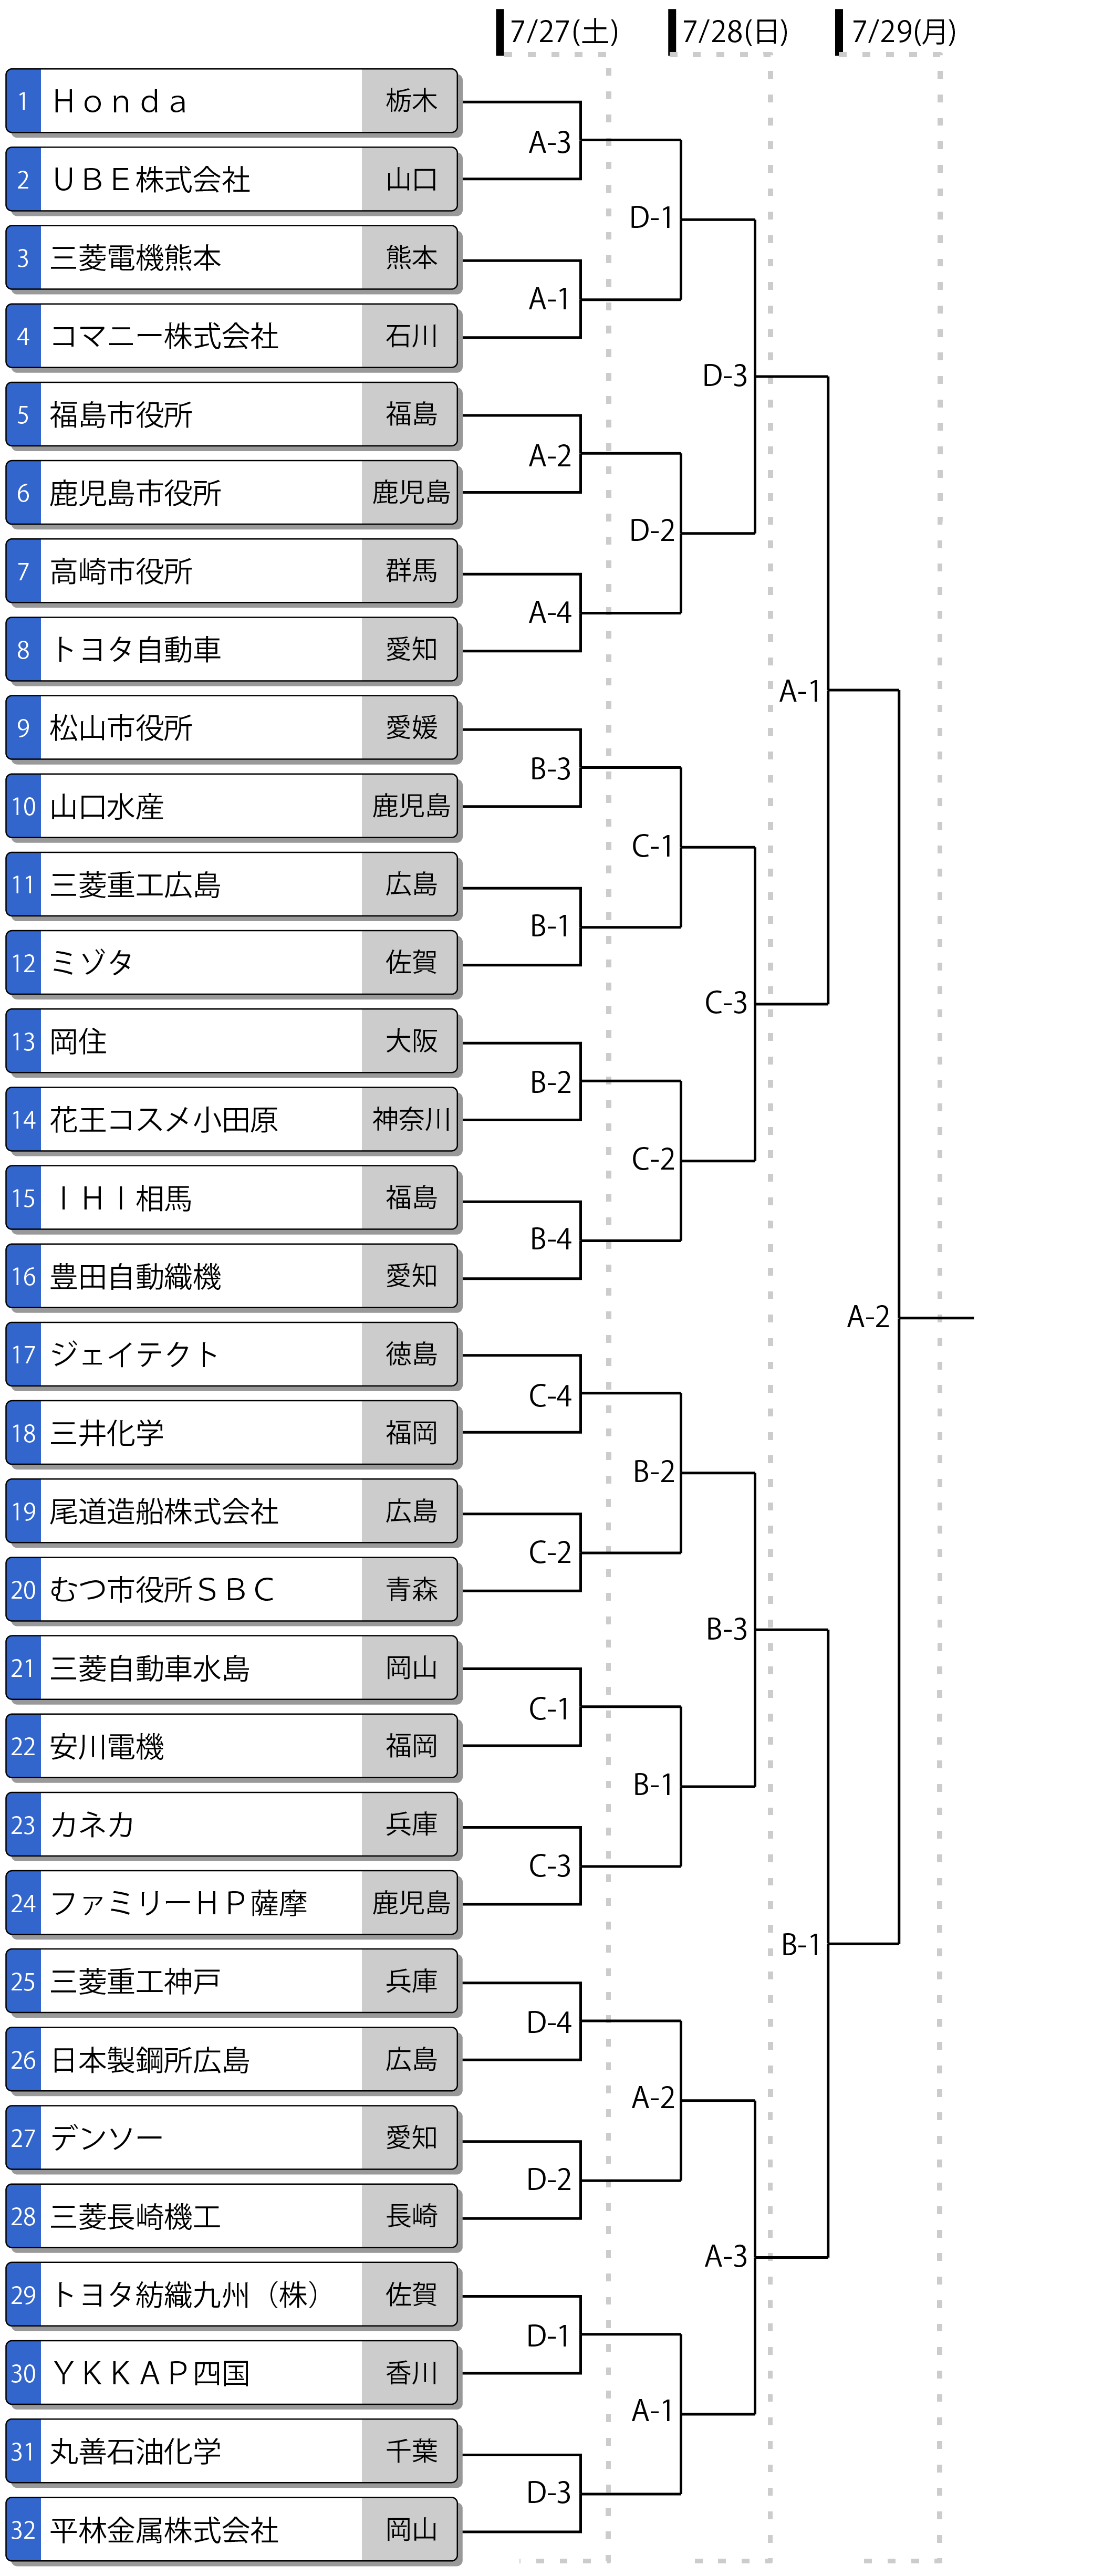 第64回全日本実業団男子選手権 トーナメント表